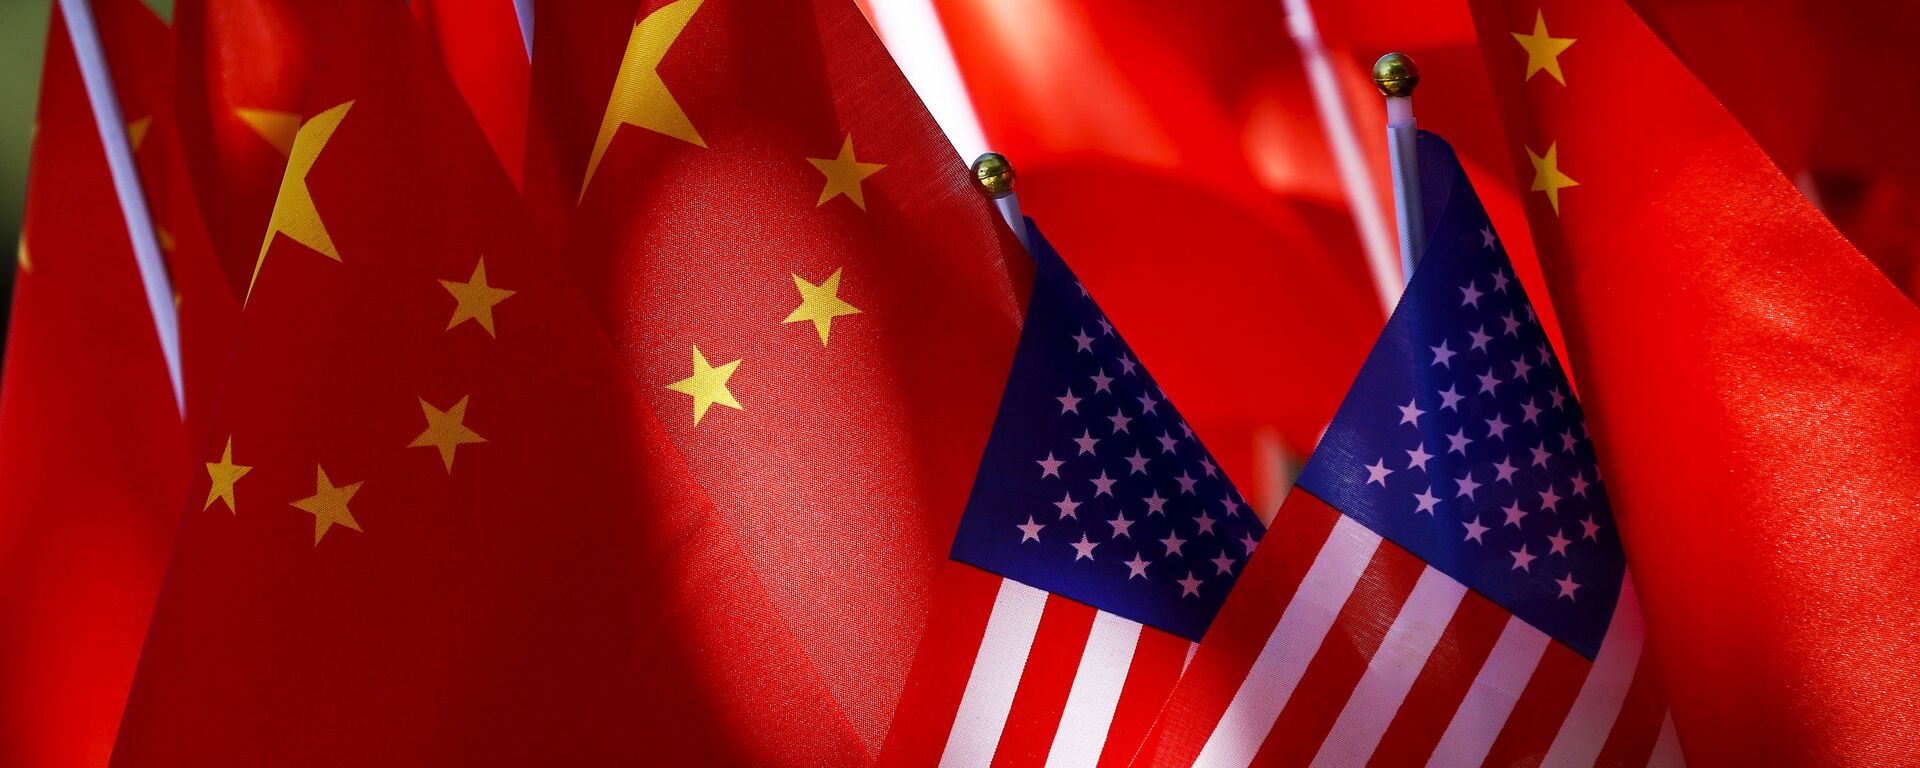 Banderas de EEUU y China - Sputnik Mundo, 1920, 19.03.2021